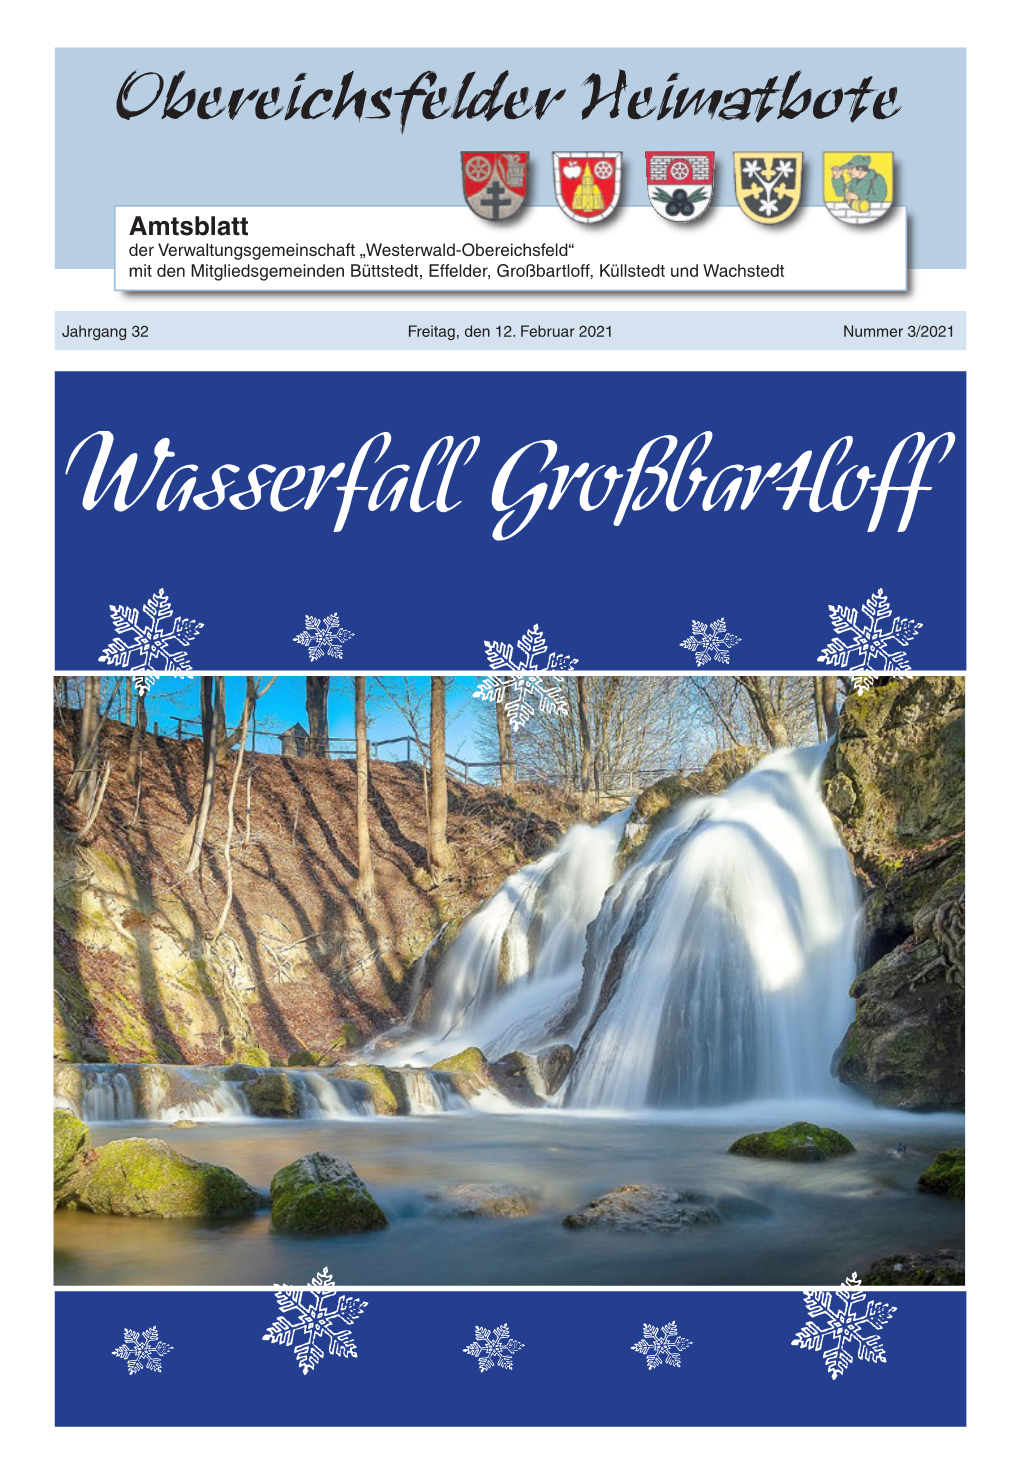 Wasserfall Großbartloff Obereichsfelder Heimatbote - 2 - Nr